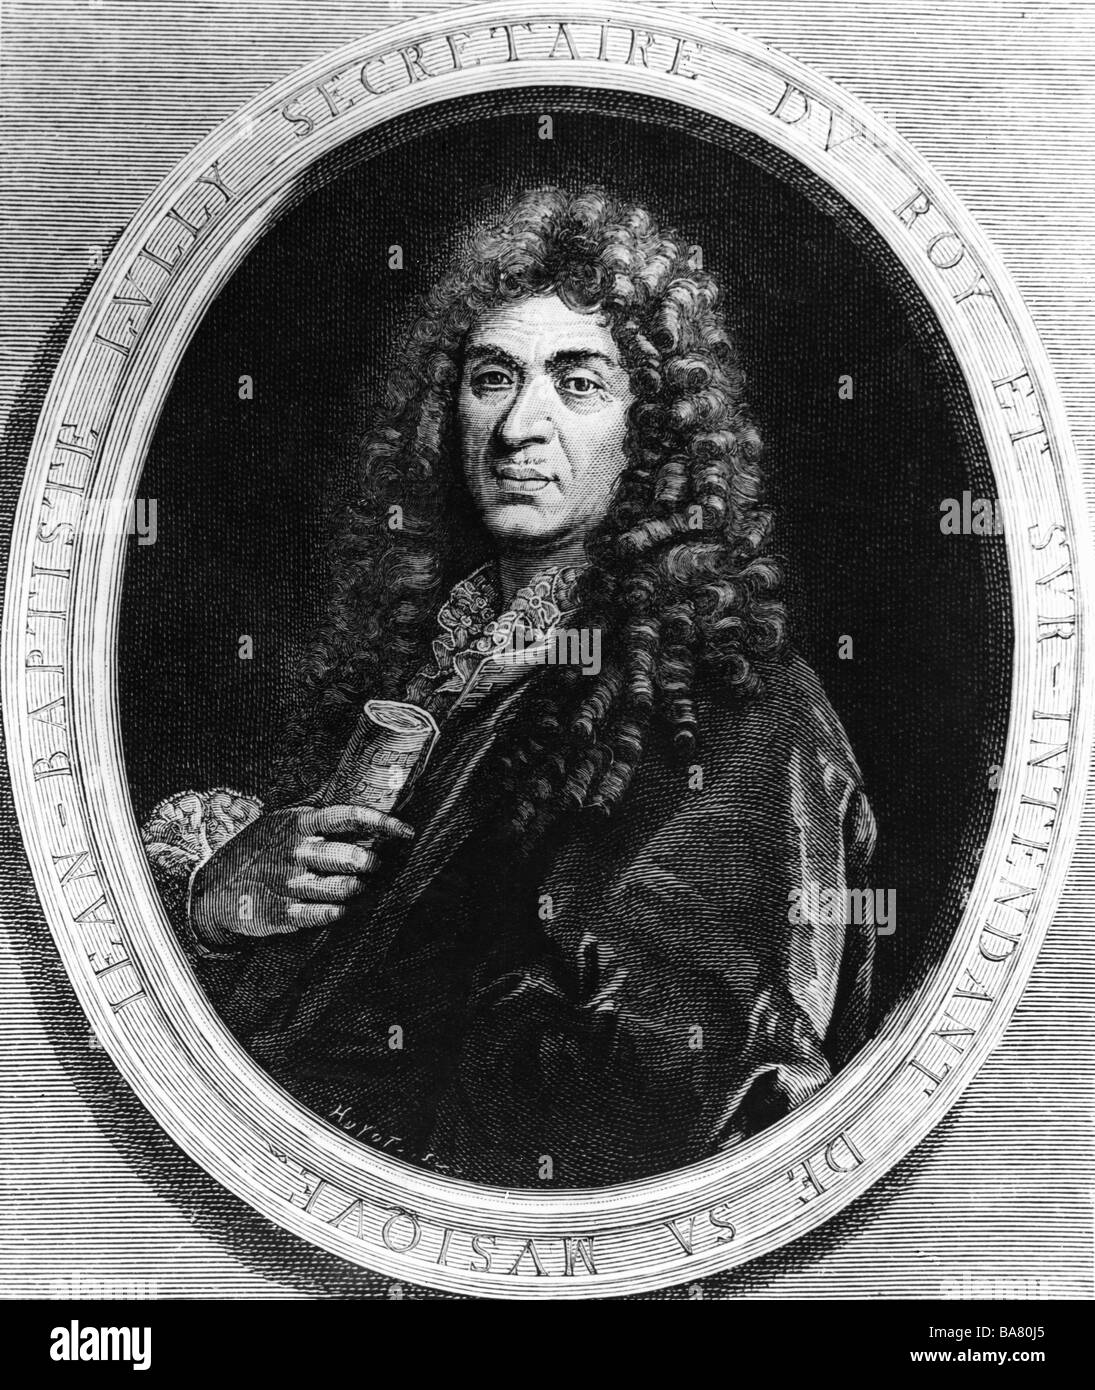 Lully, Jean Baptiste, 28.11.1632 - 22.3.1687, compositeur français, demi-longueur, gravure sur cuivre par Jean Louis , n'a pas d'auteur de l'artiste pour être effacé Banque D'Images